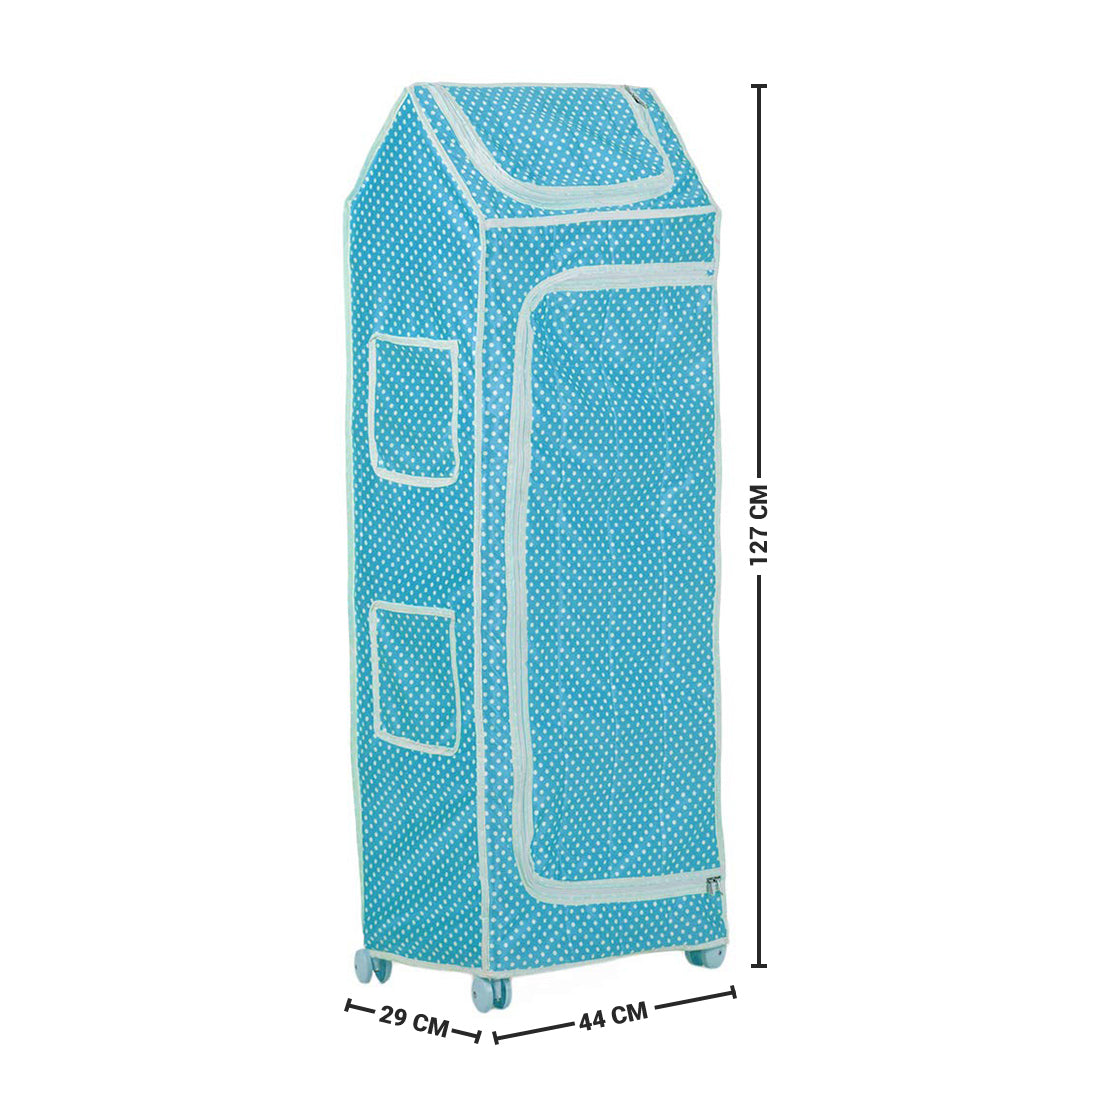 NHR Multipurpose Premium Plastic Baby almirah (5 Shelf, Blue)